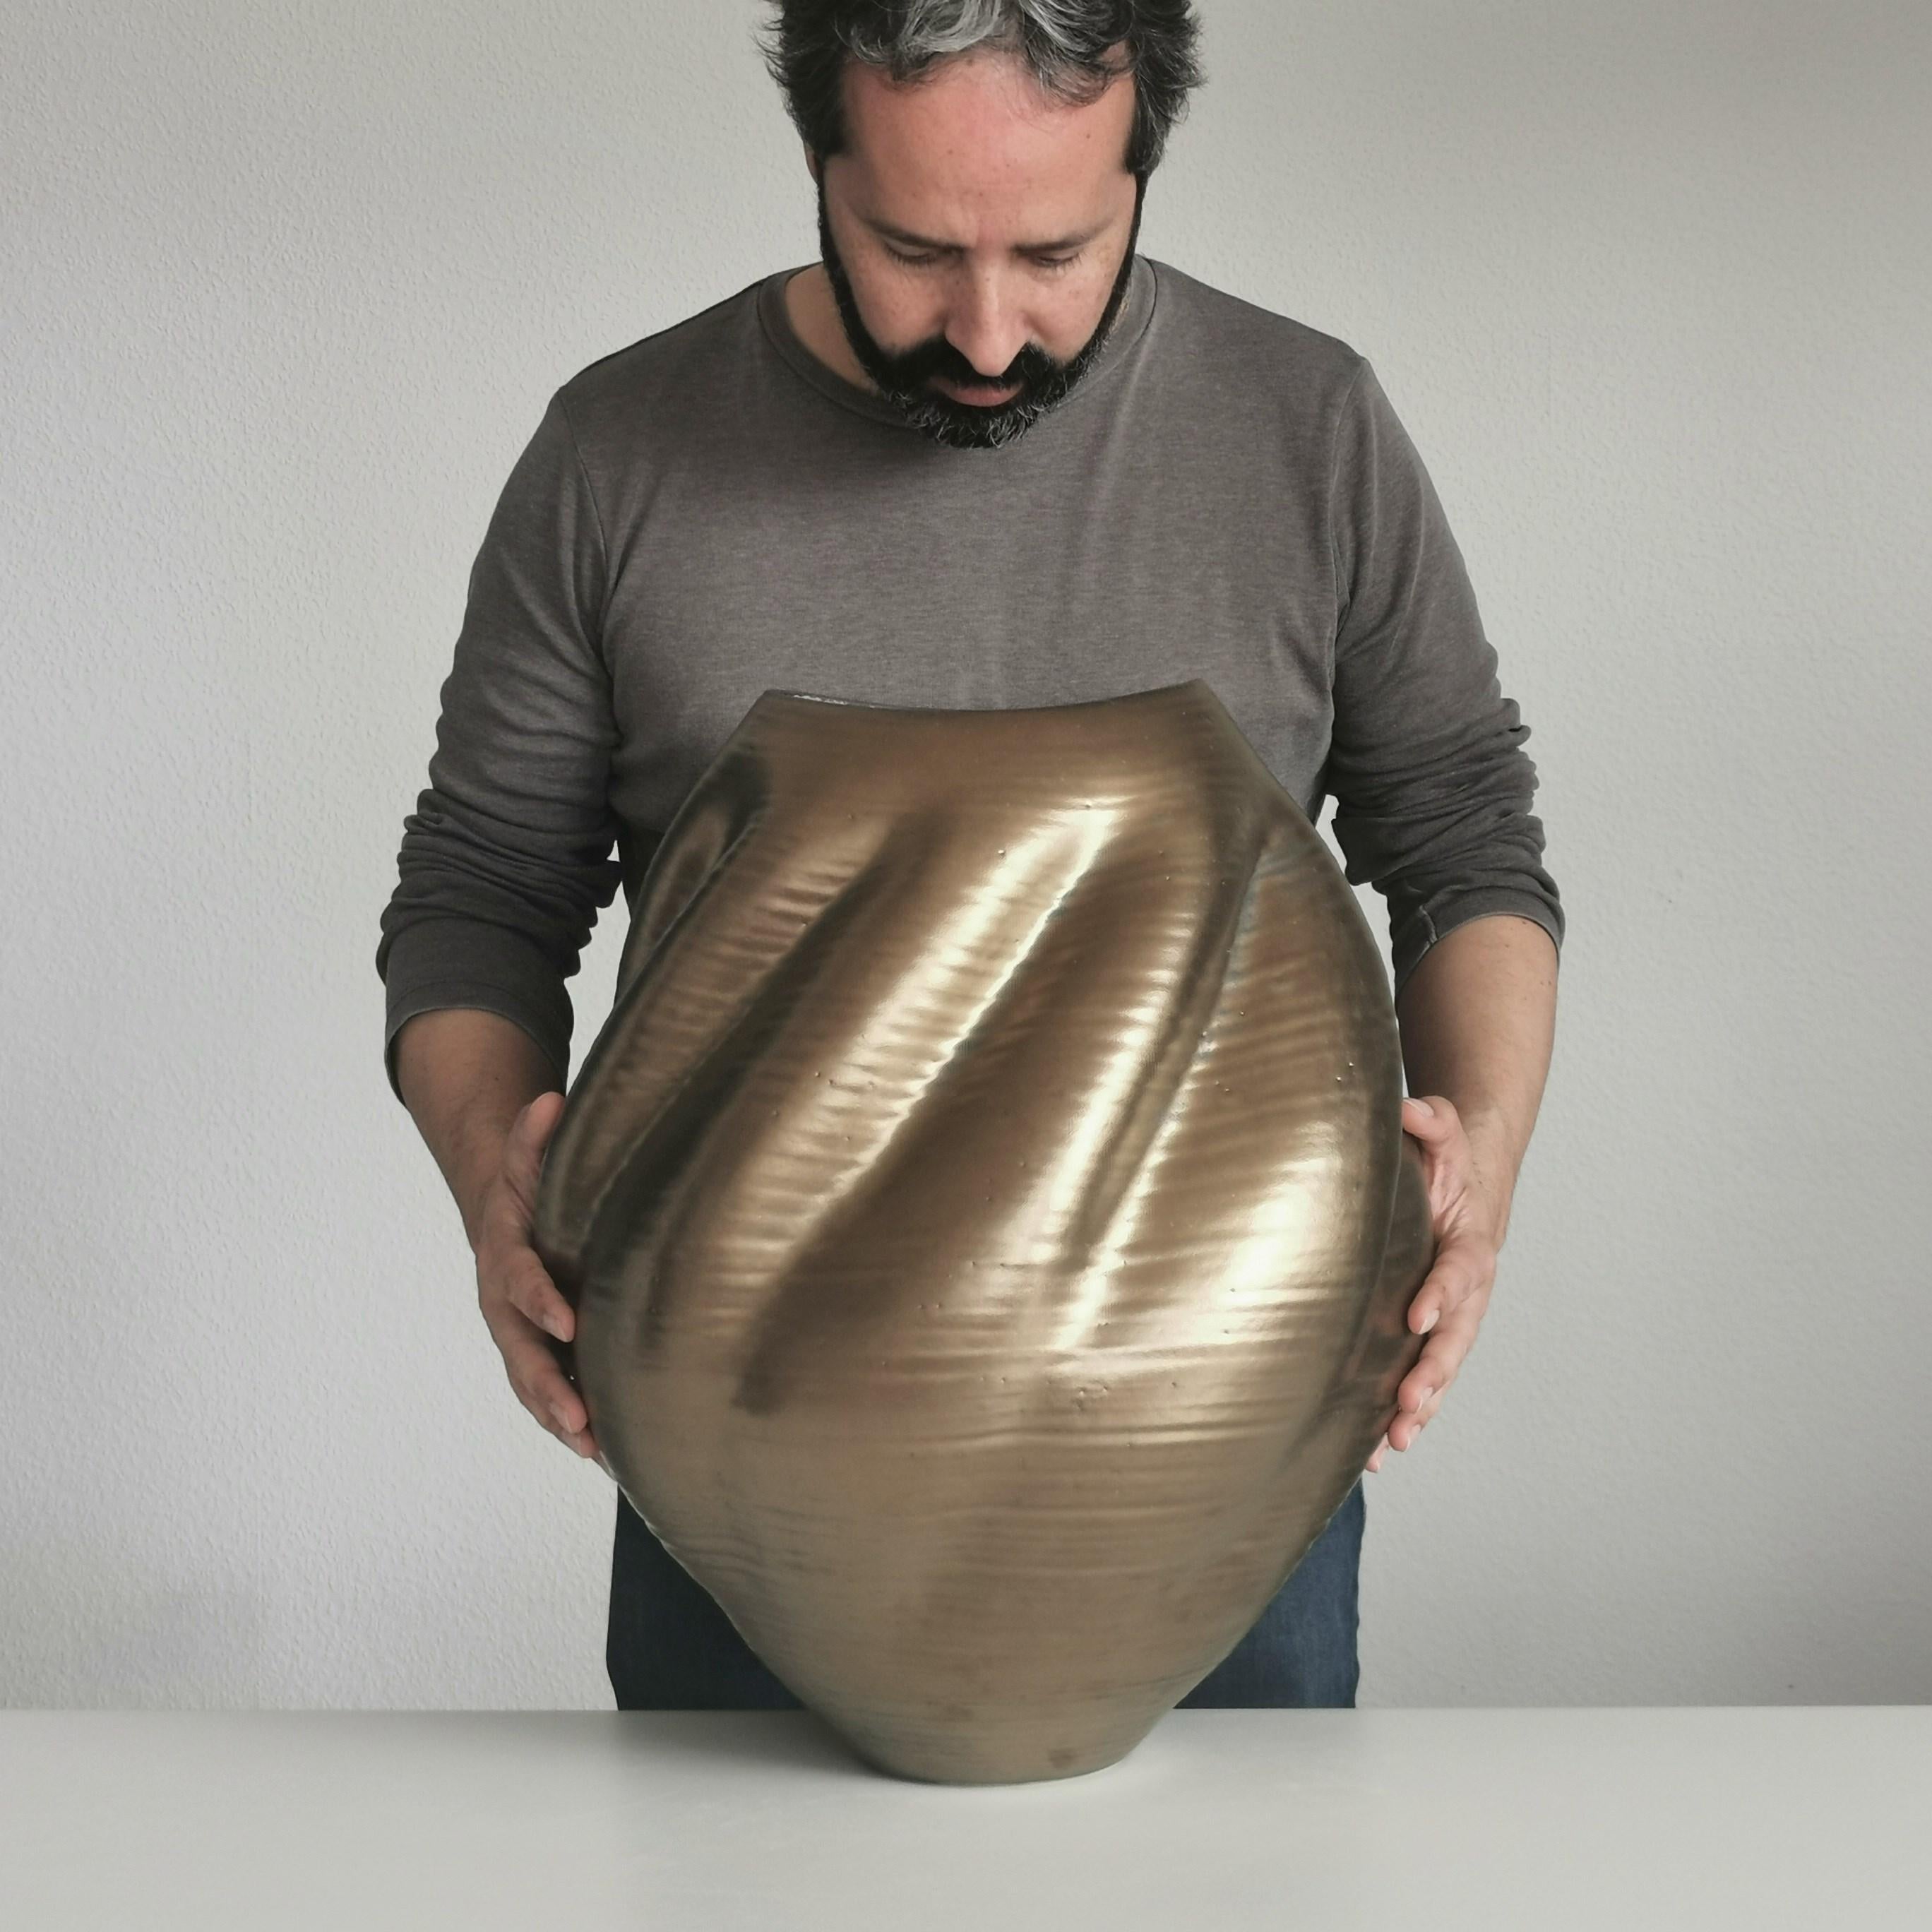 Spanish Gold Wave Form No 80, Unique Ceramic Vessel by Nicholas Arroyave-Portela